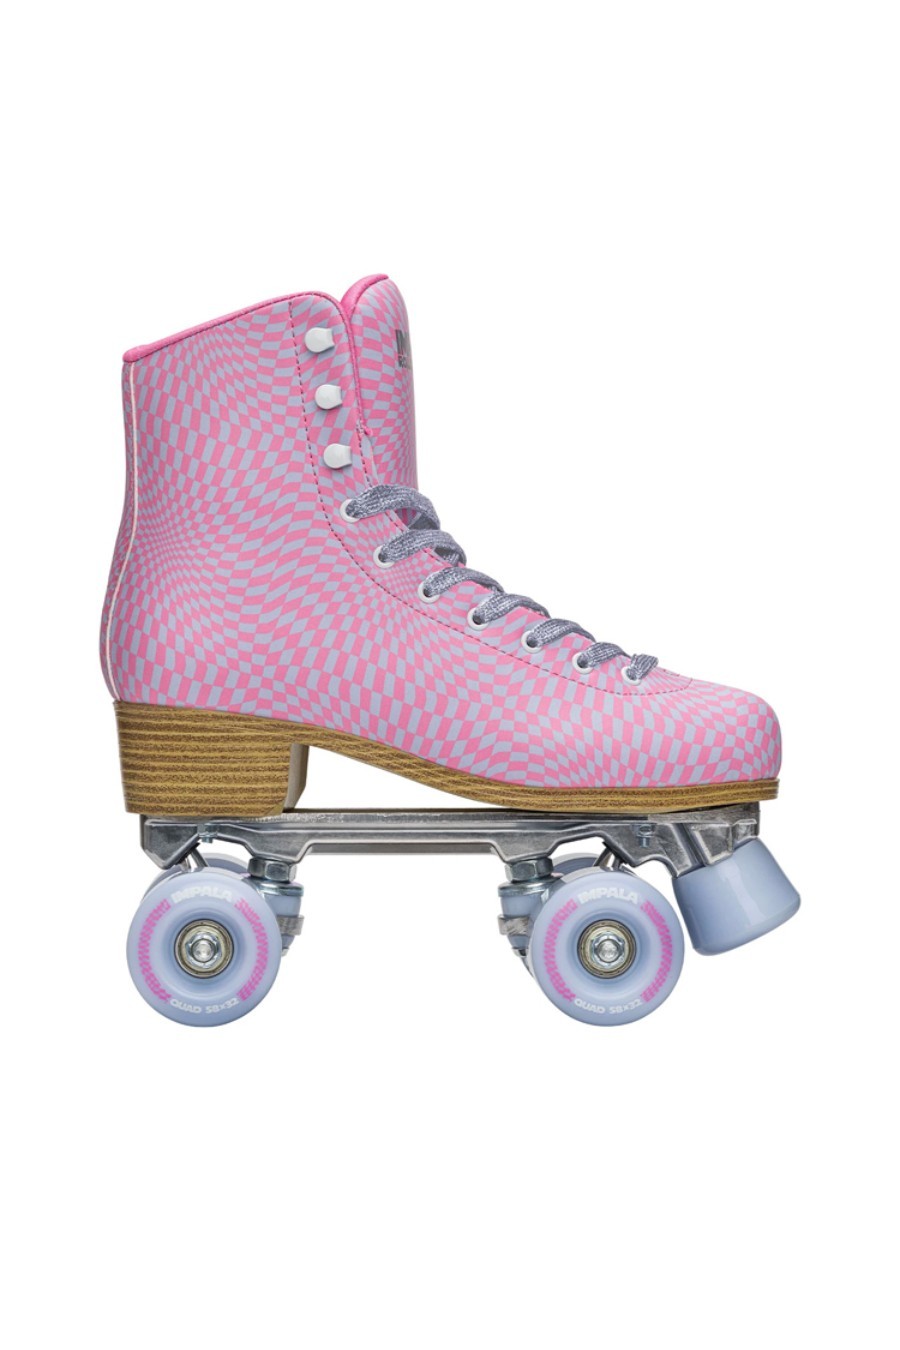 IMPALA In Line Skates QUAD SKATES WAVYCHECK - MULTI-IMP53674-122-MULTI 57928